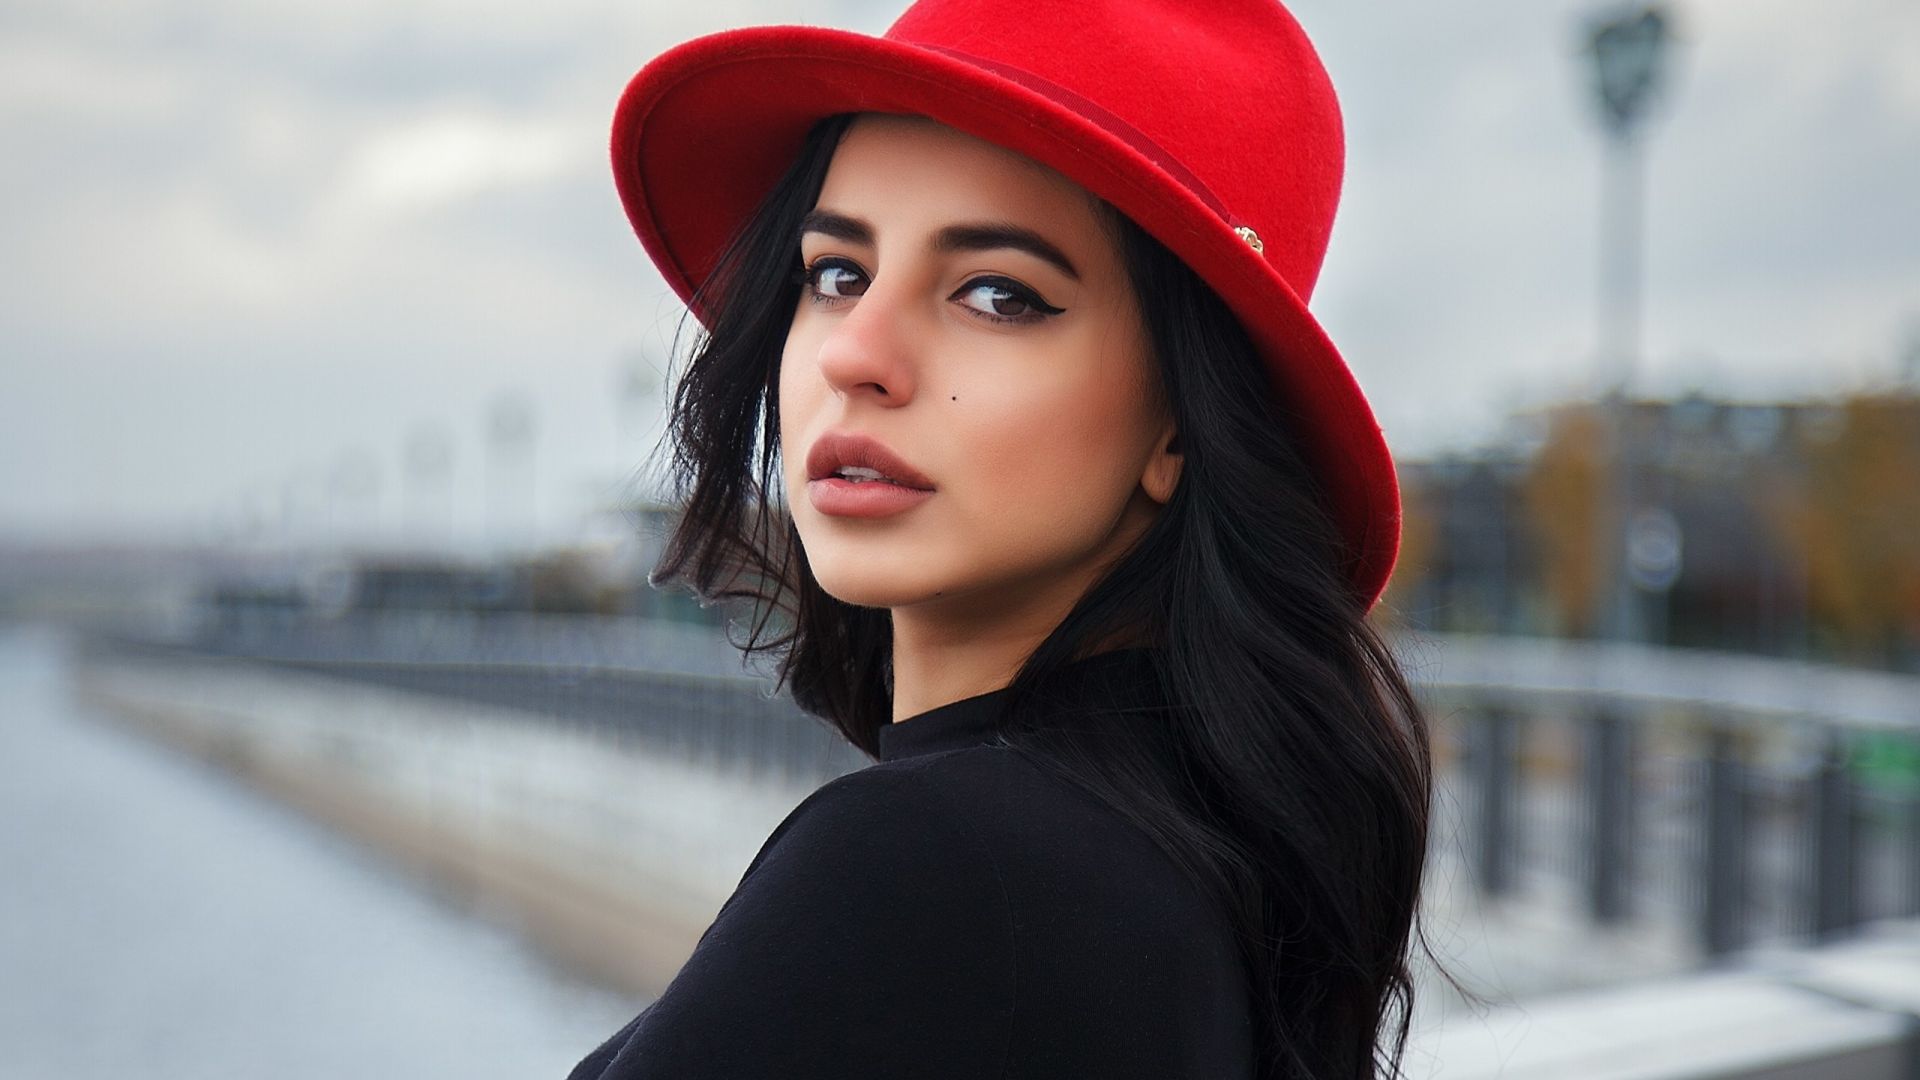 Wallpaper Girl model, long hair, red hat